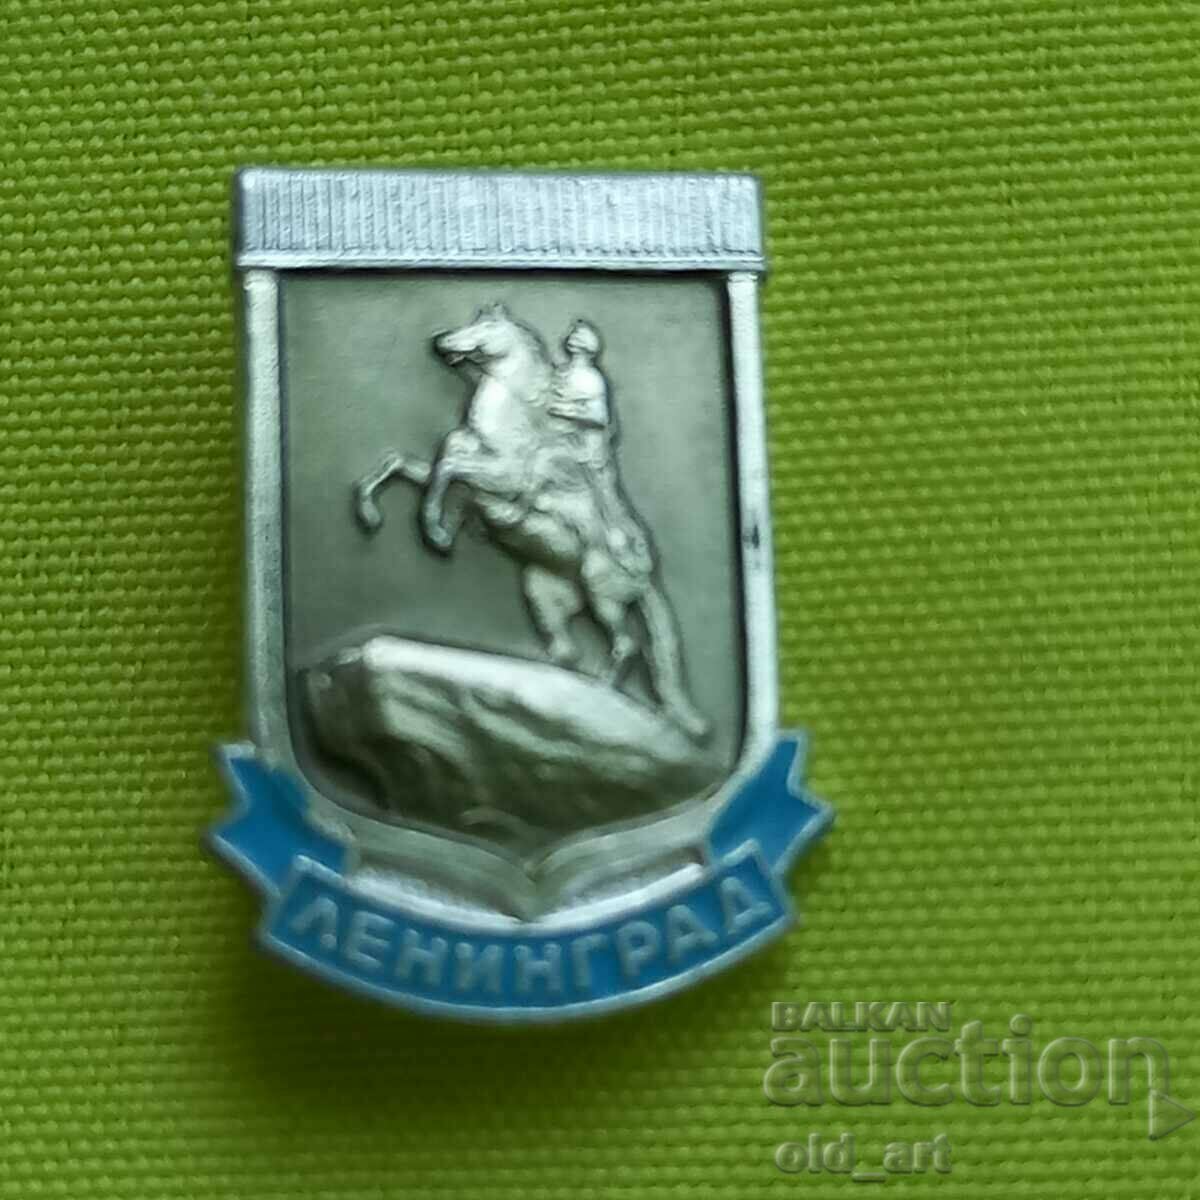 Badge - Leningrad